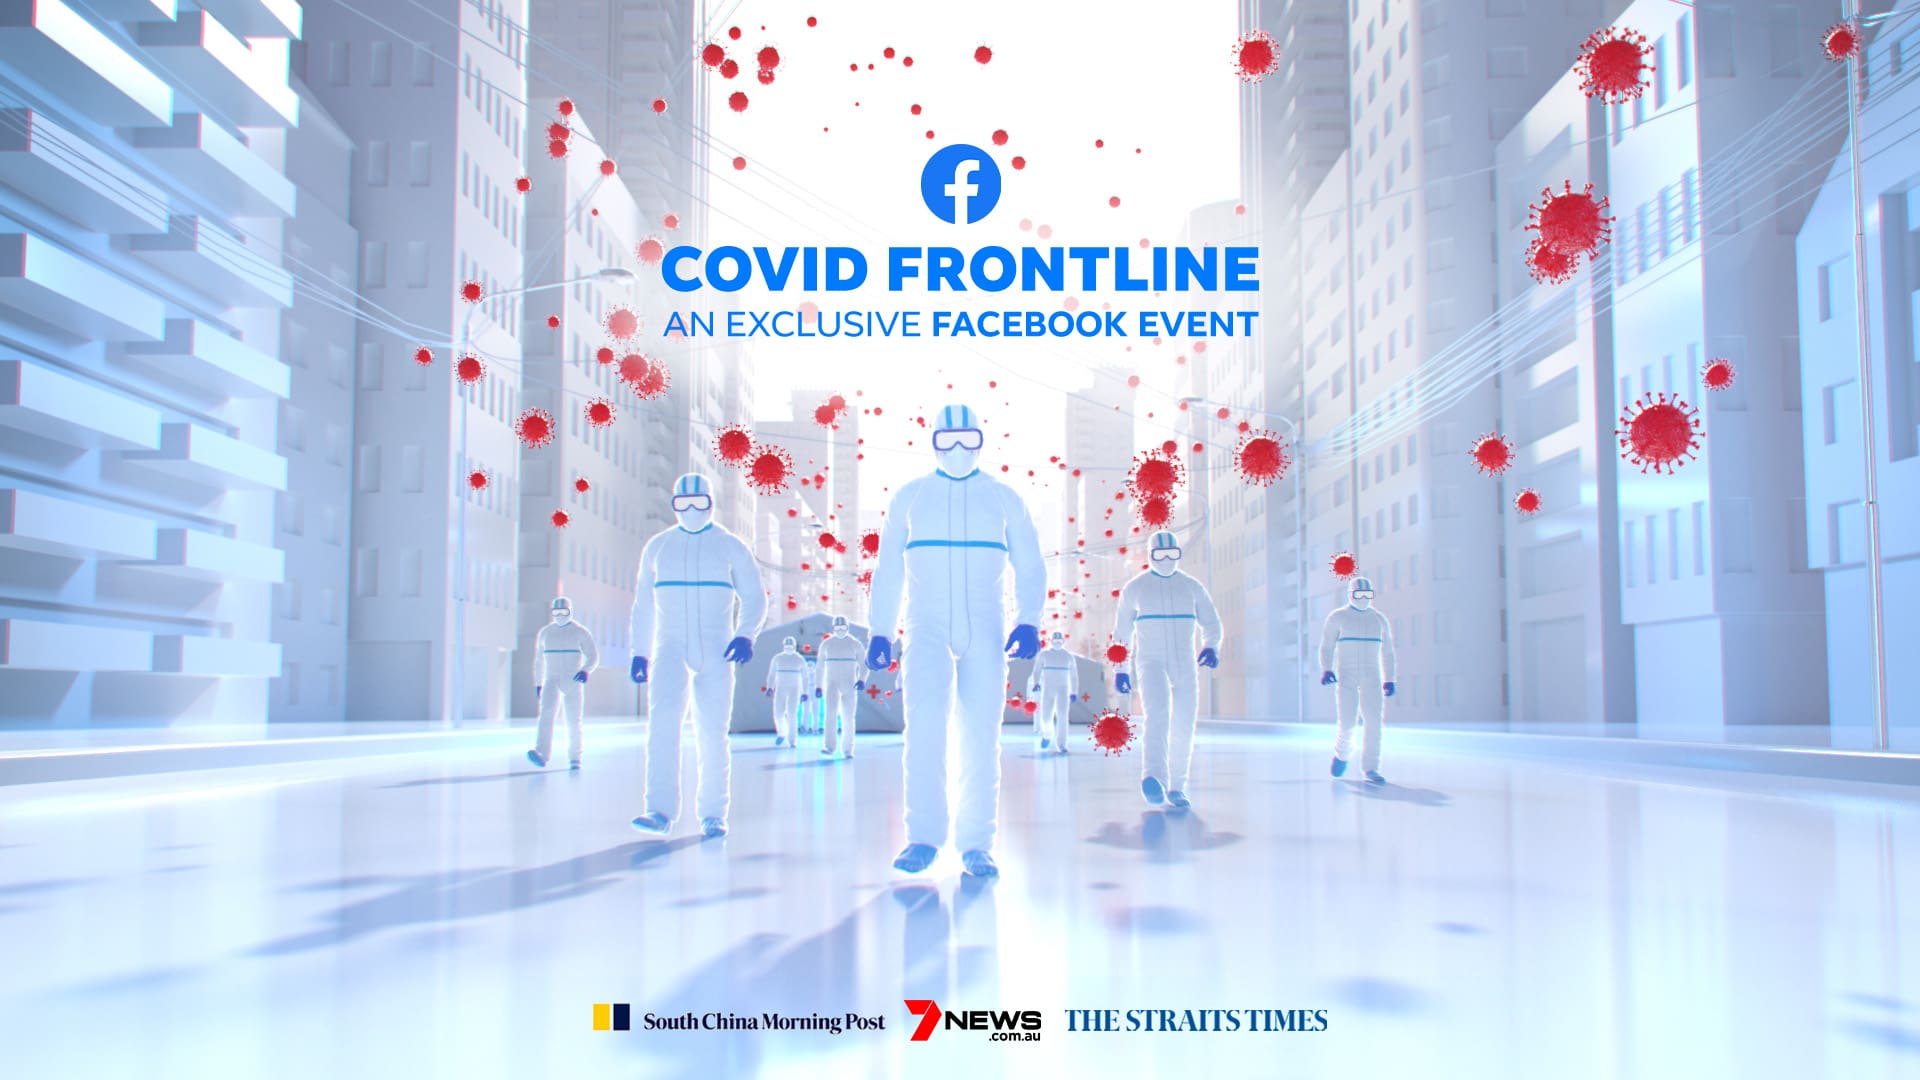 Facebook: COVID Frontline